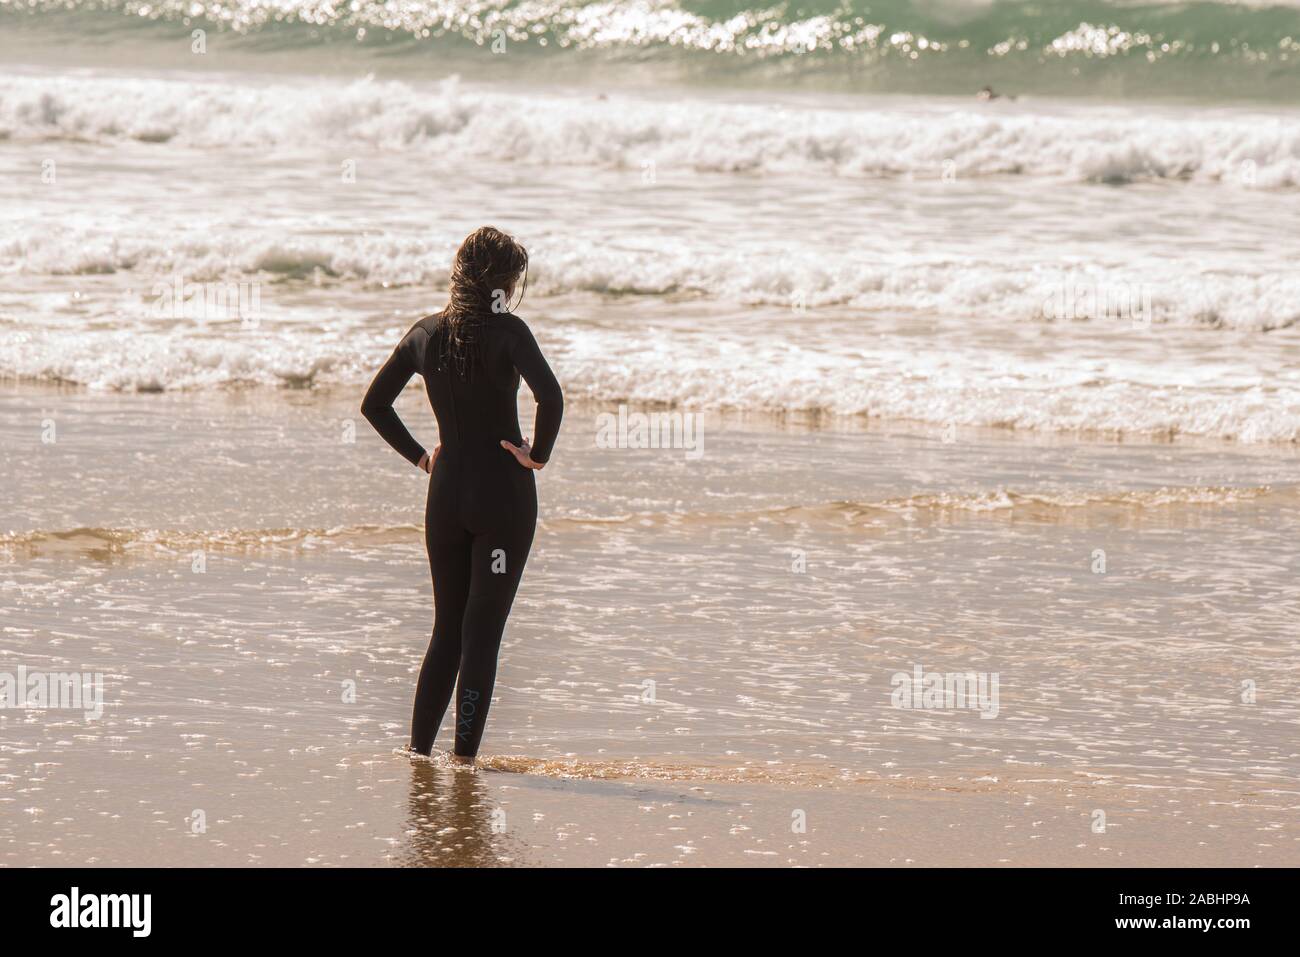 Image de couleur jeune femme dans une combinaison isothermique à plage  portugal Photo Stock - Alamy